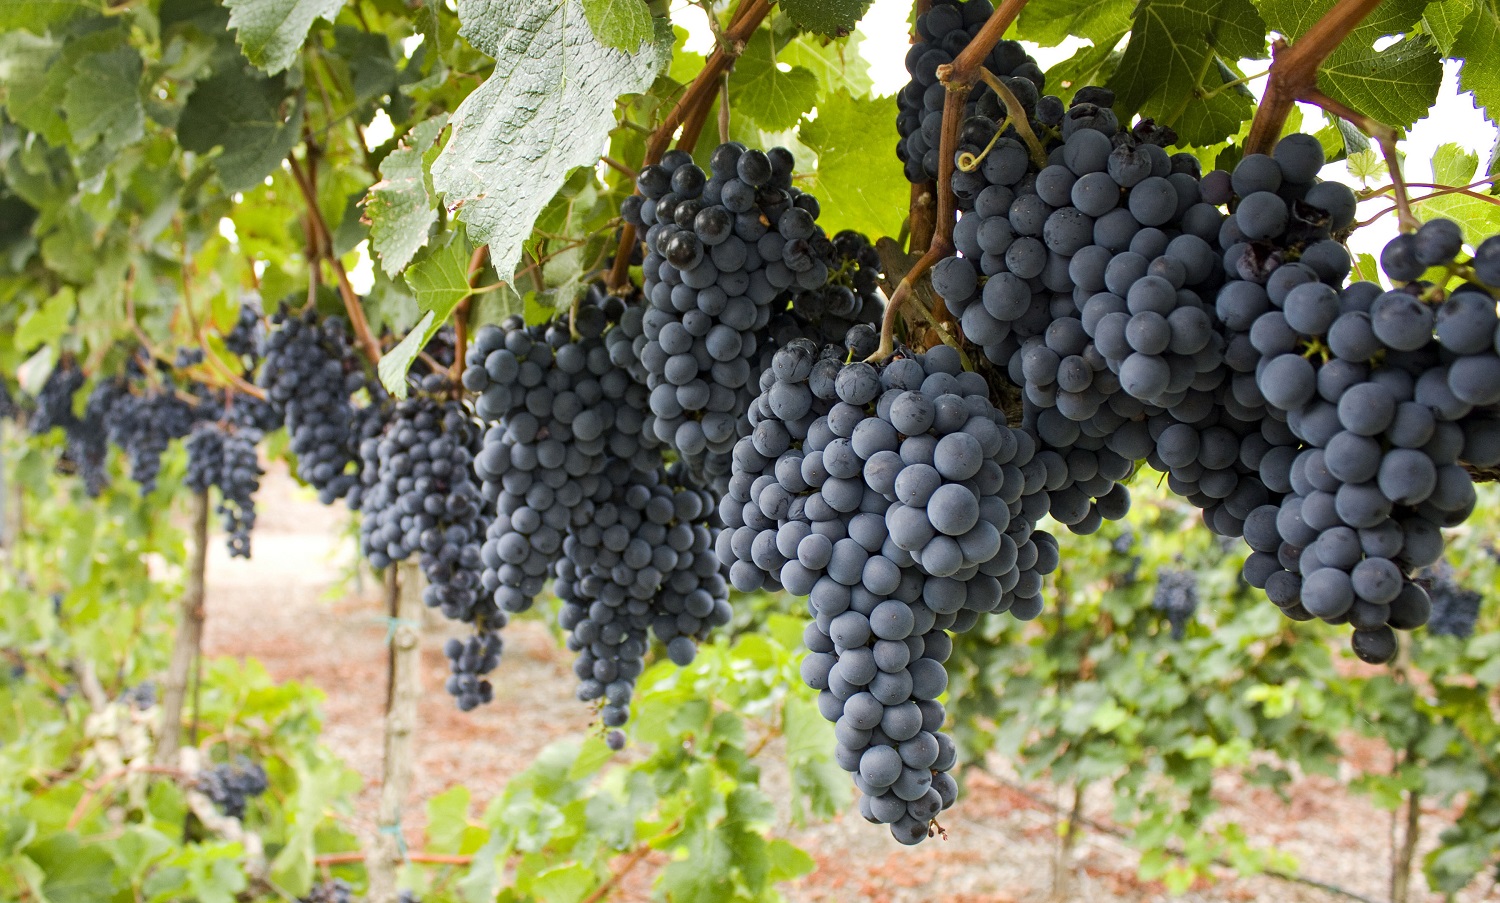 Cabernet Sauvignon Grapes on the vine